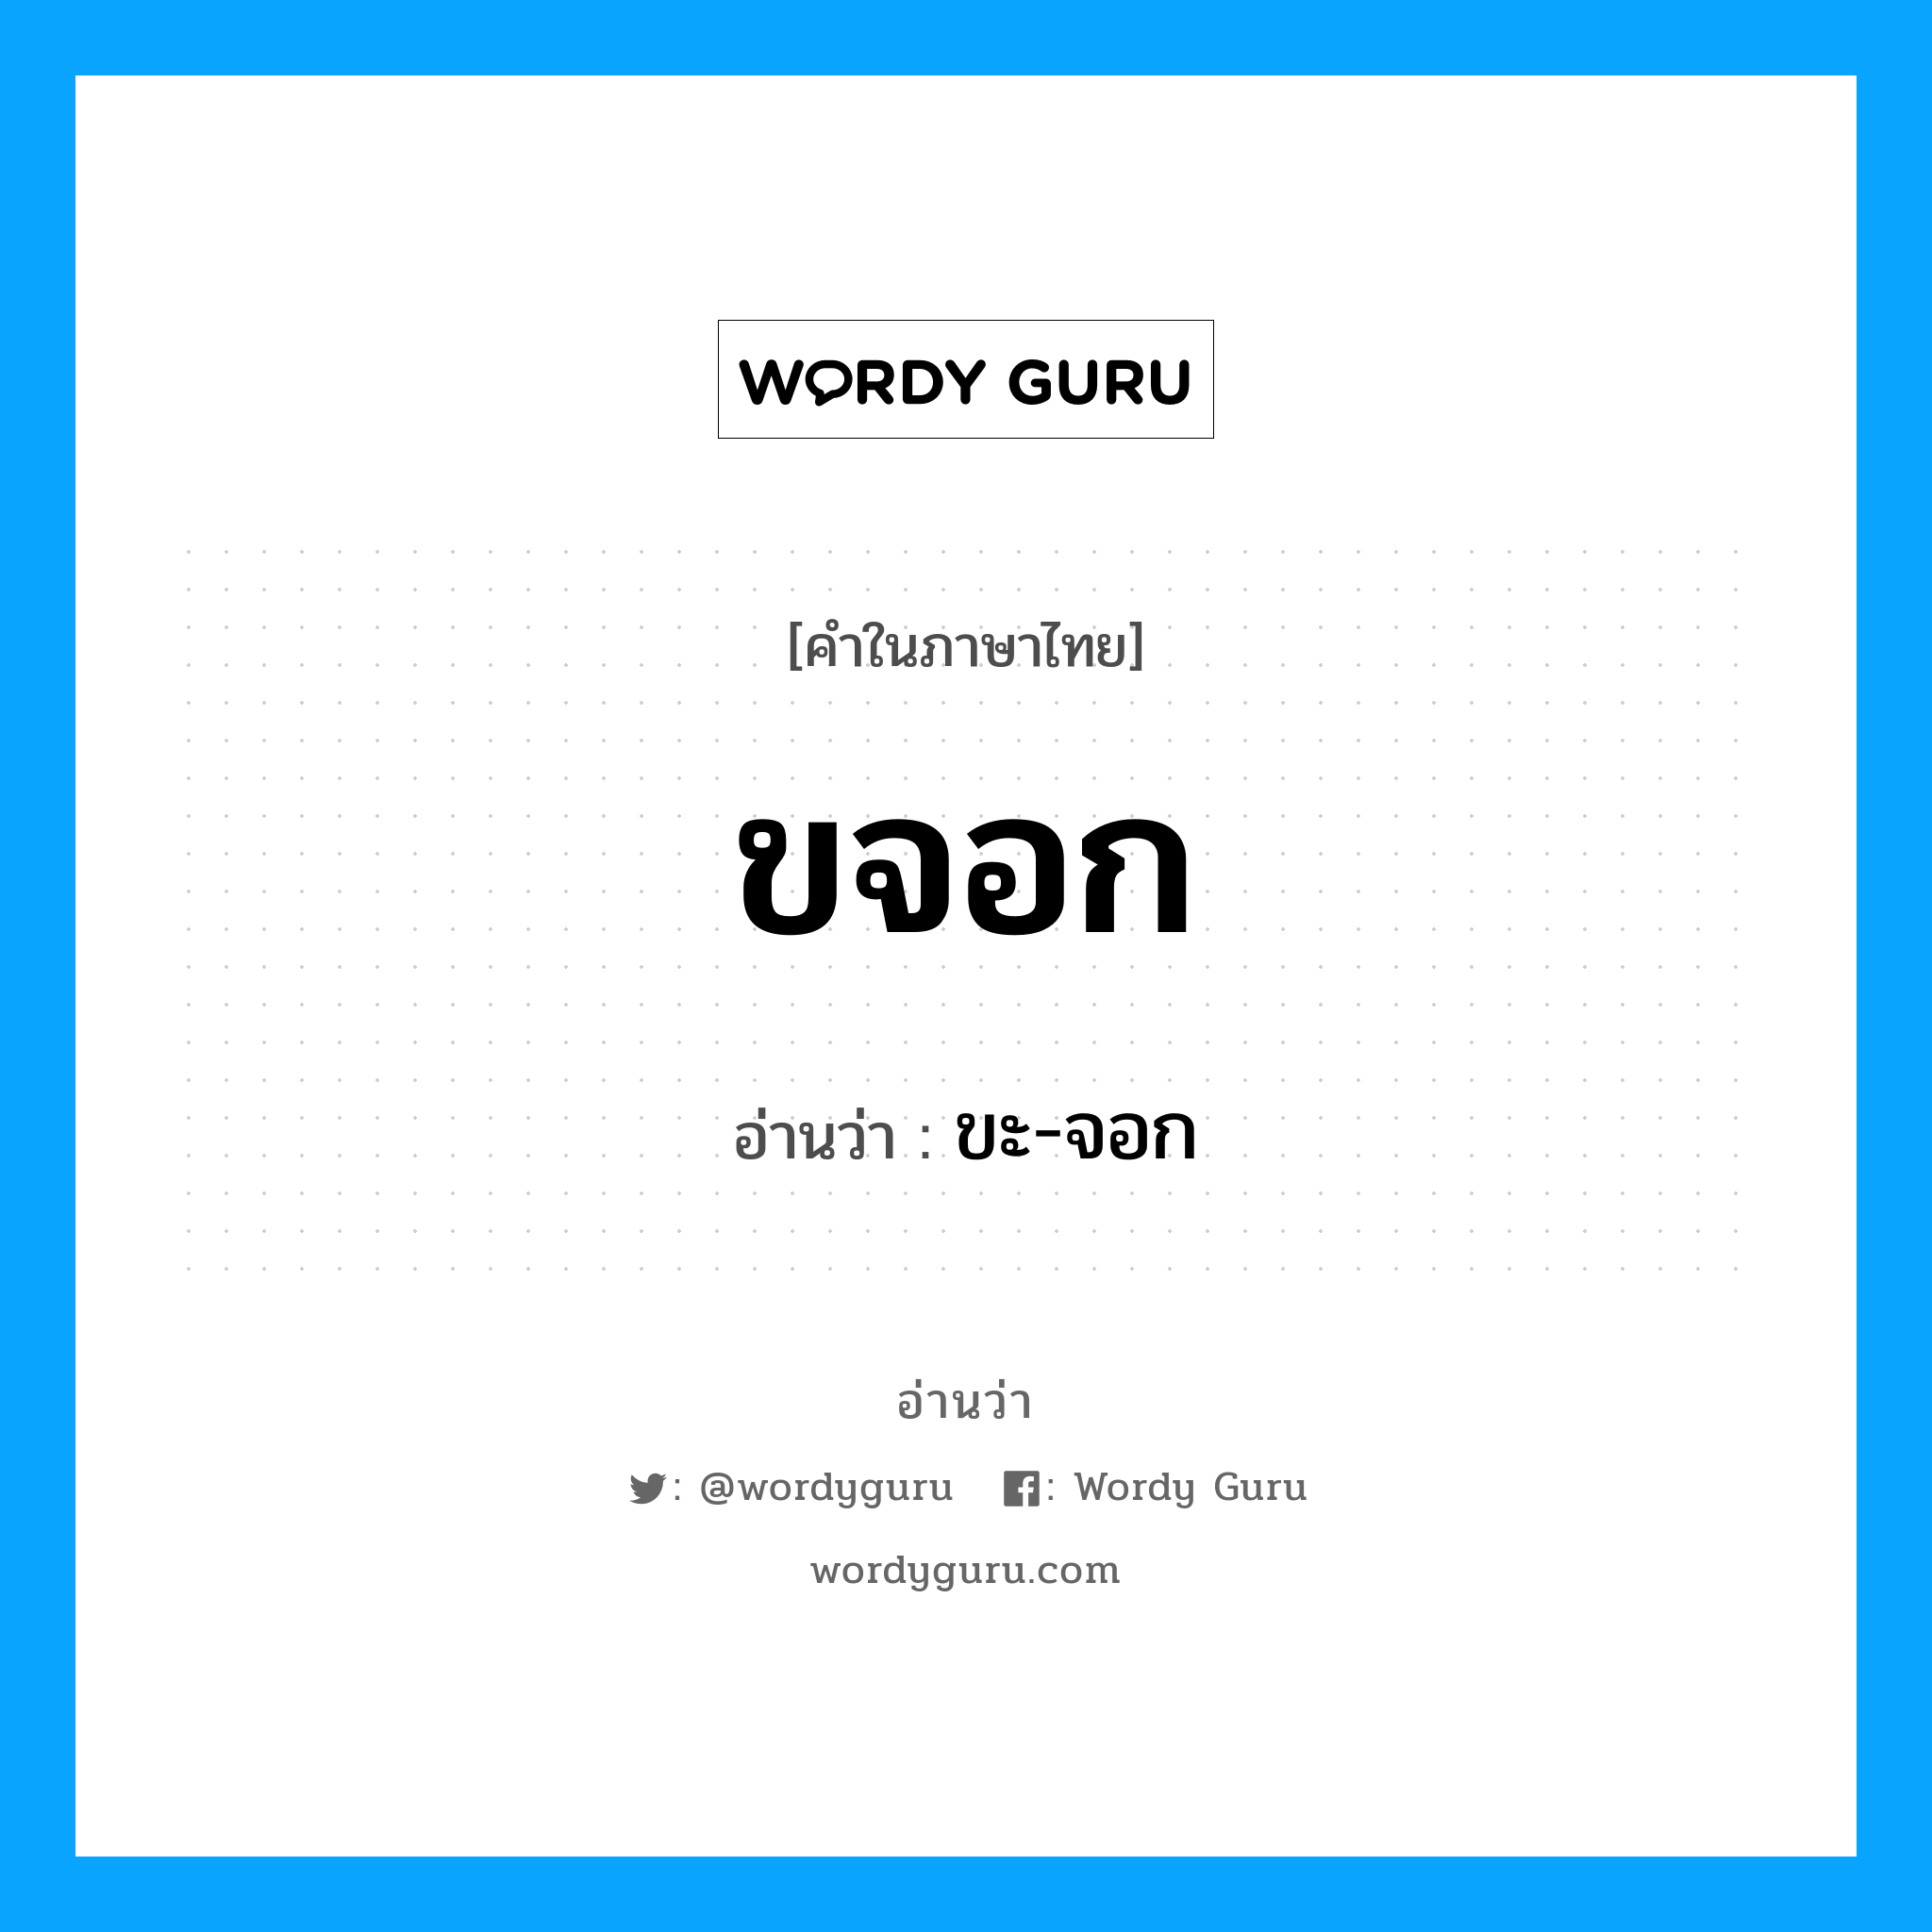 ขะ-จอก เป็นคำอ่านของคำไหน?, คำในภาษาไทย ขะ-จอก อ่านว่า ขจอก